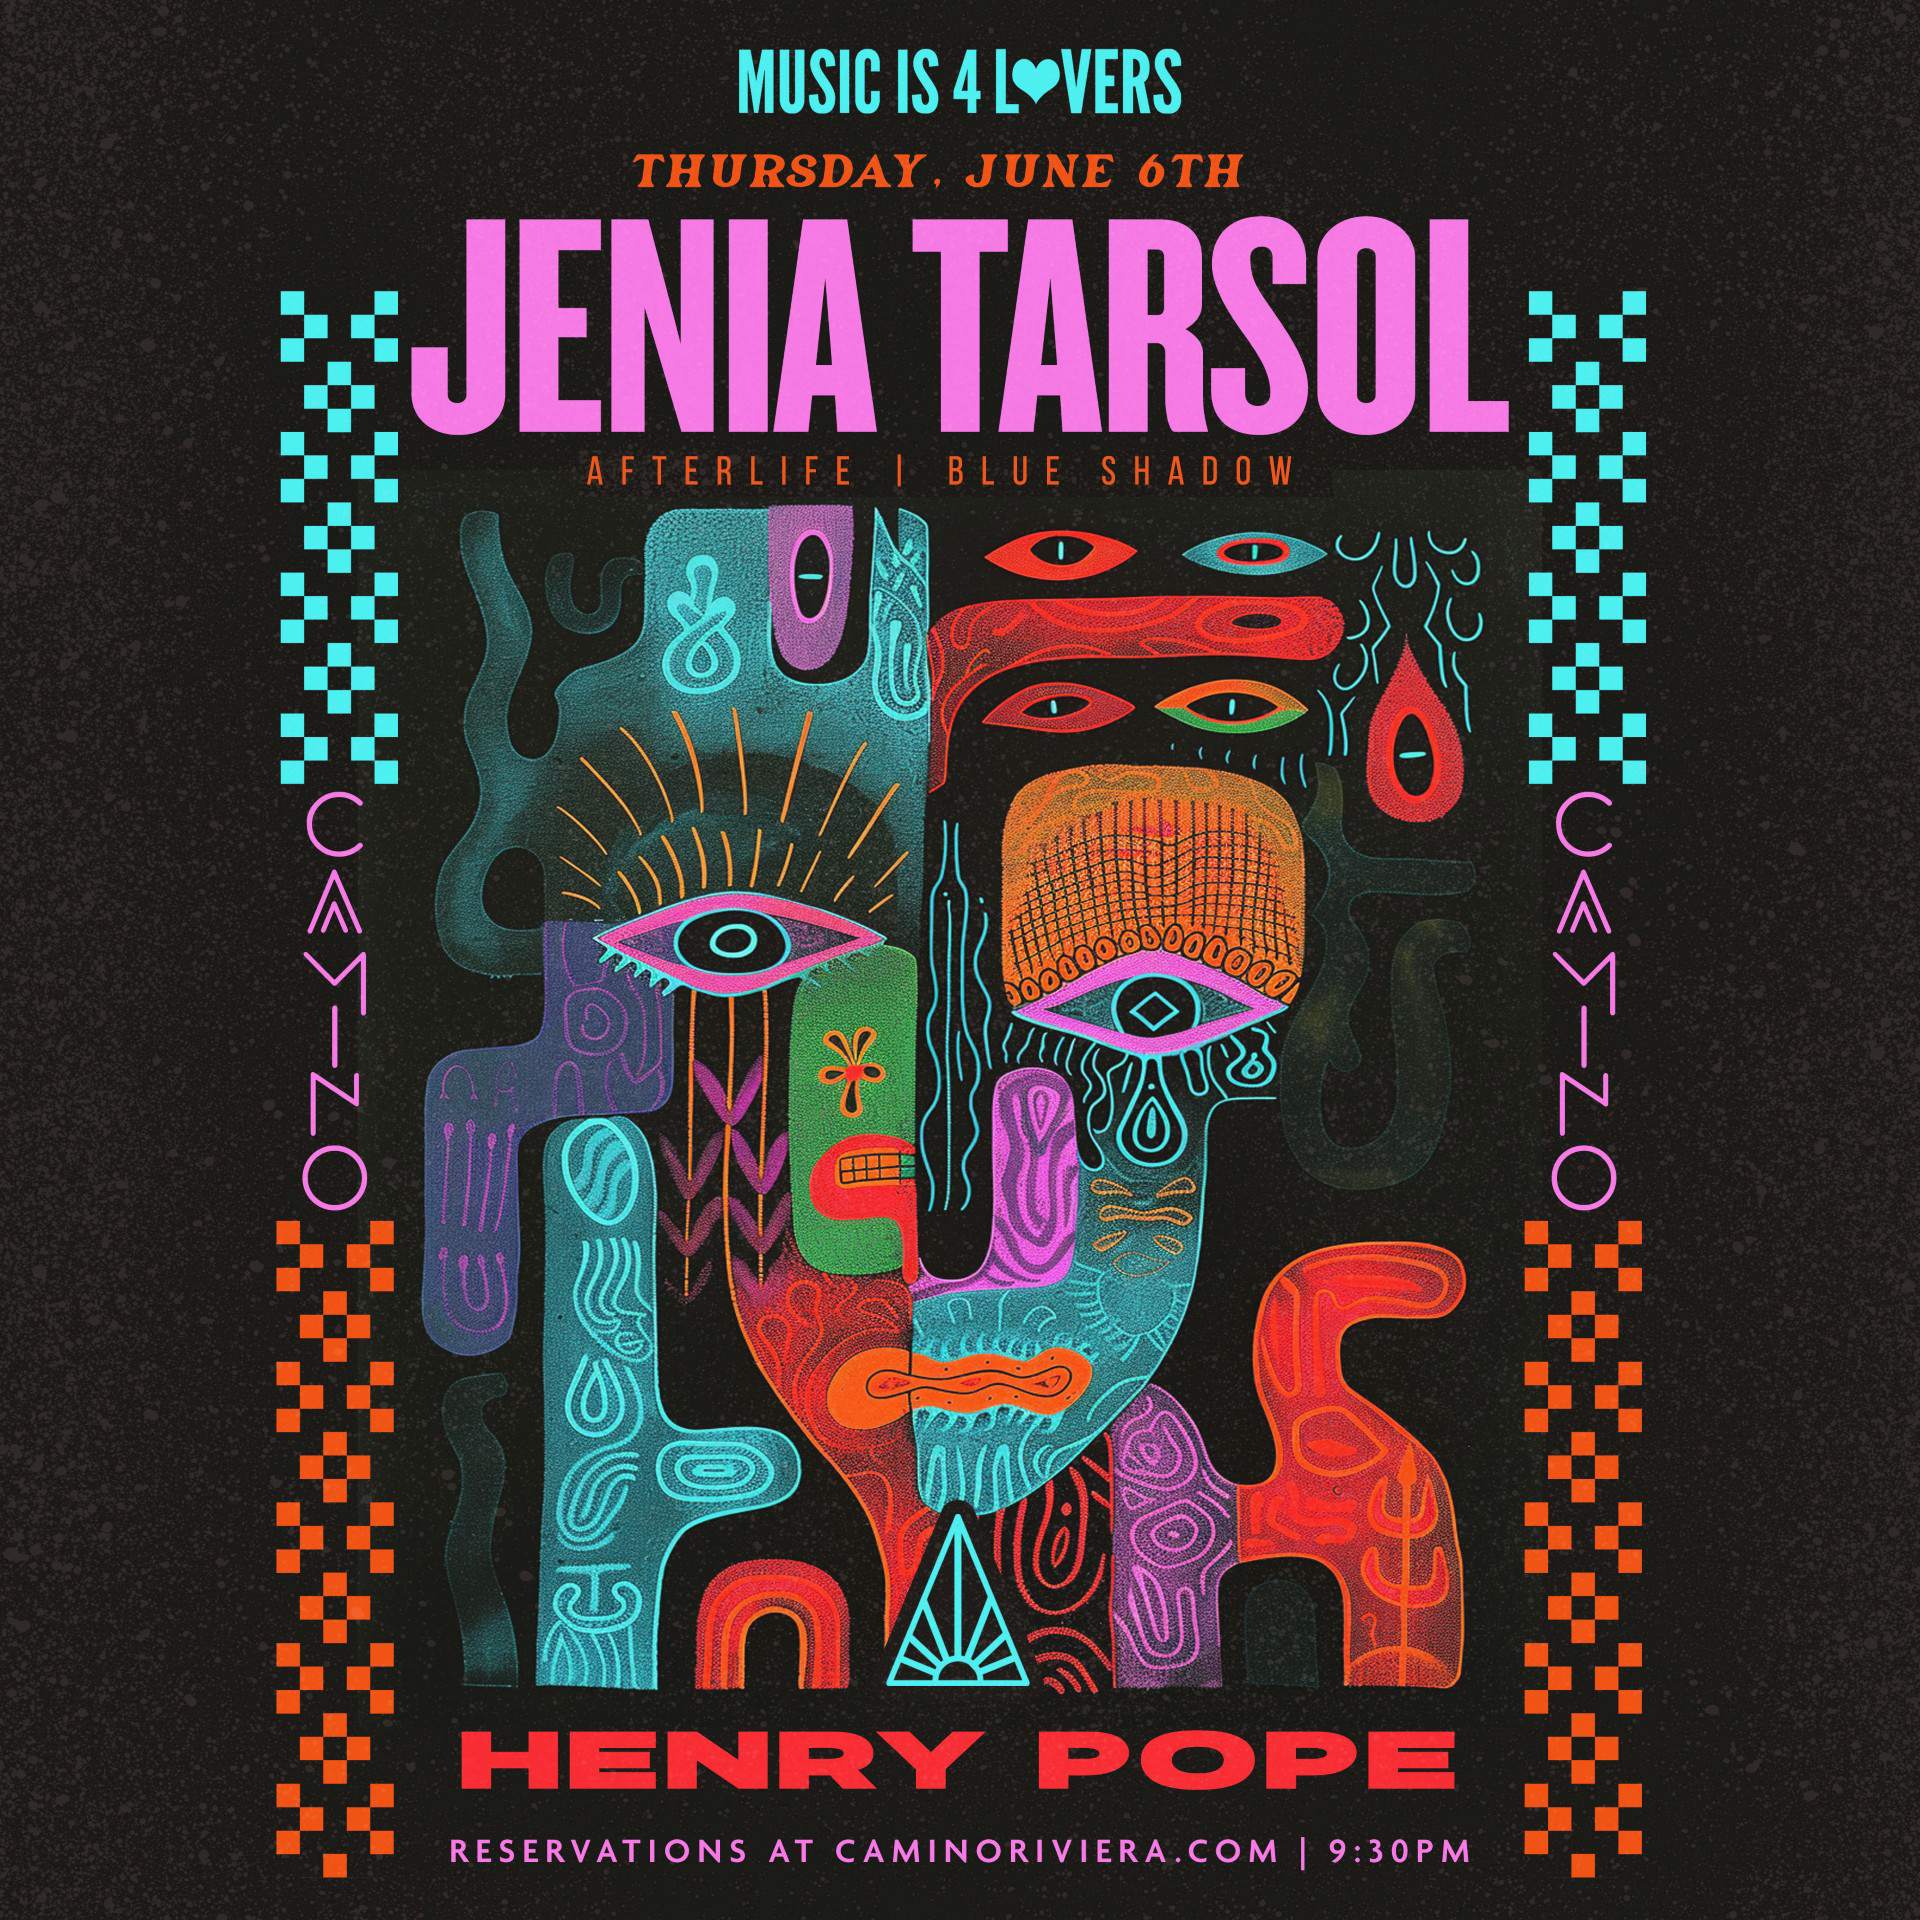 Jenia Tarsol [AFTERLIFE - BLUE SHADOW] at Camino Riviera - NO COVER - フライヤー表